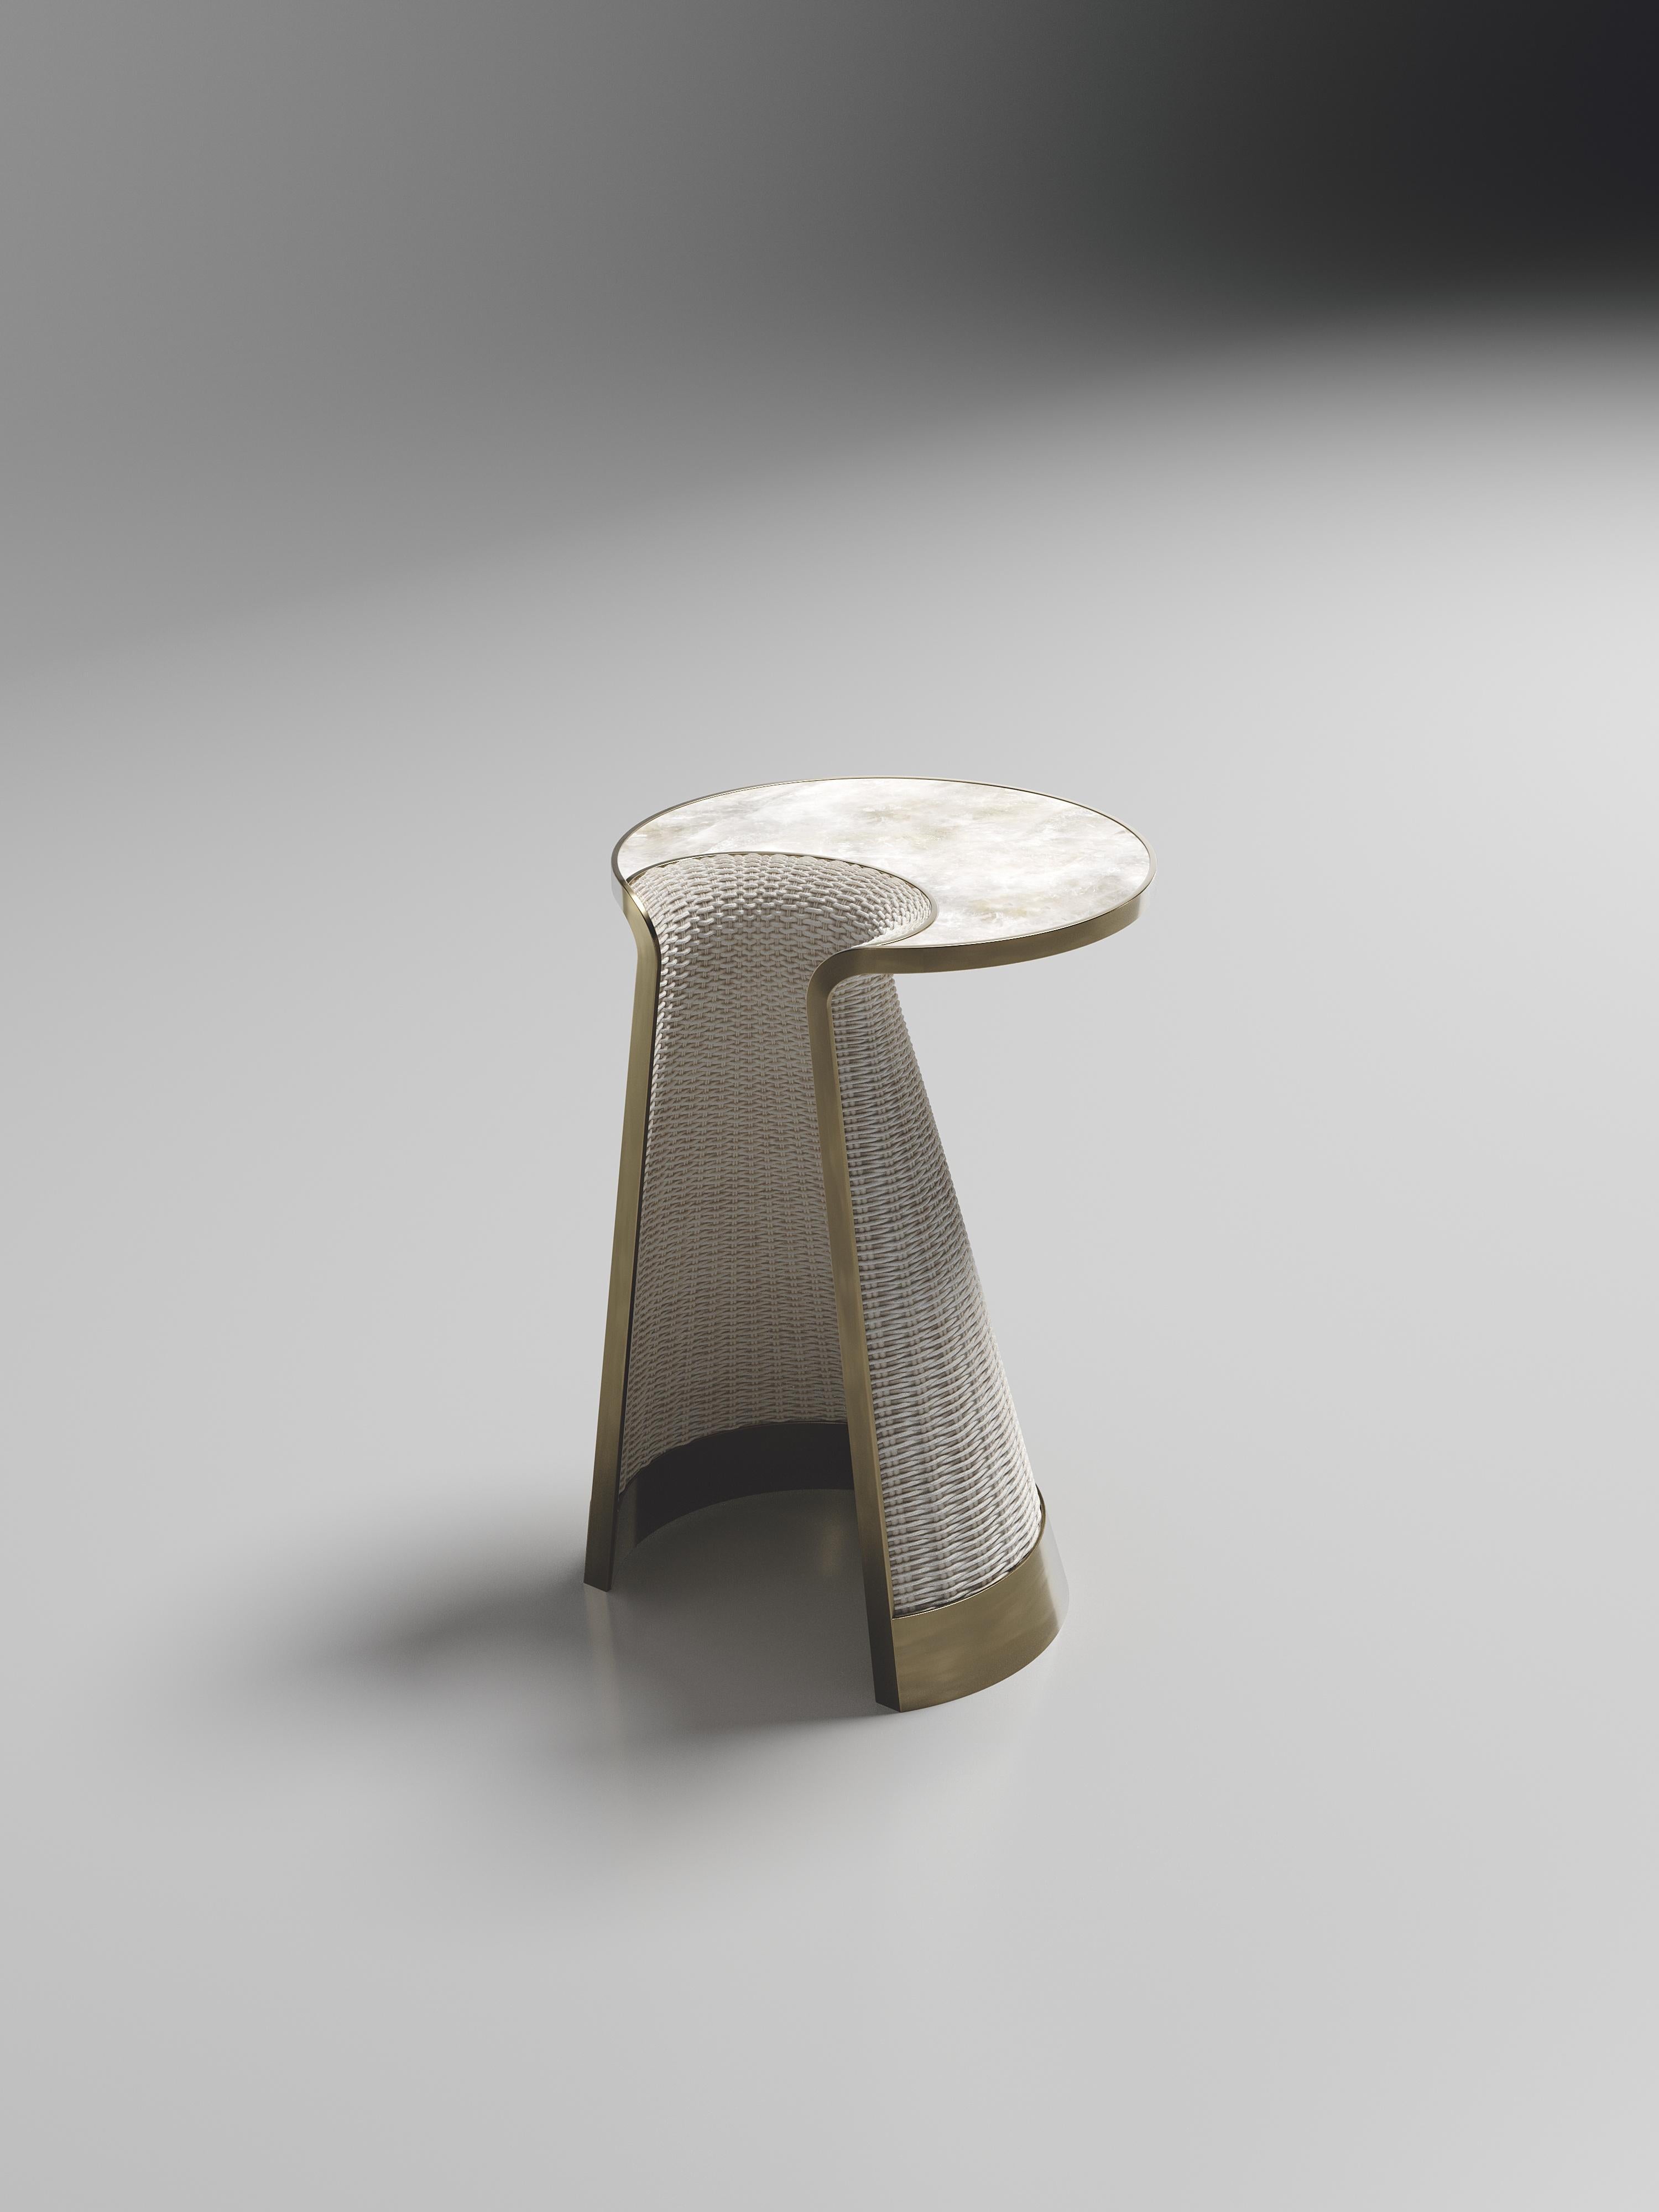 La petite table d'appoint gigogne Nymphea de R&Y Augousti fait partie du lancement de leur nouvelle capsule de rotin. La pièce explore l'ADN emblématique de la marque, qui consiste à transposer l'artisanat du vieux monde dans une ambiance